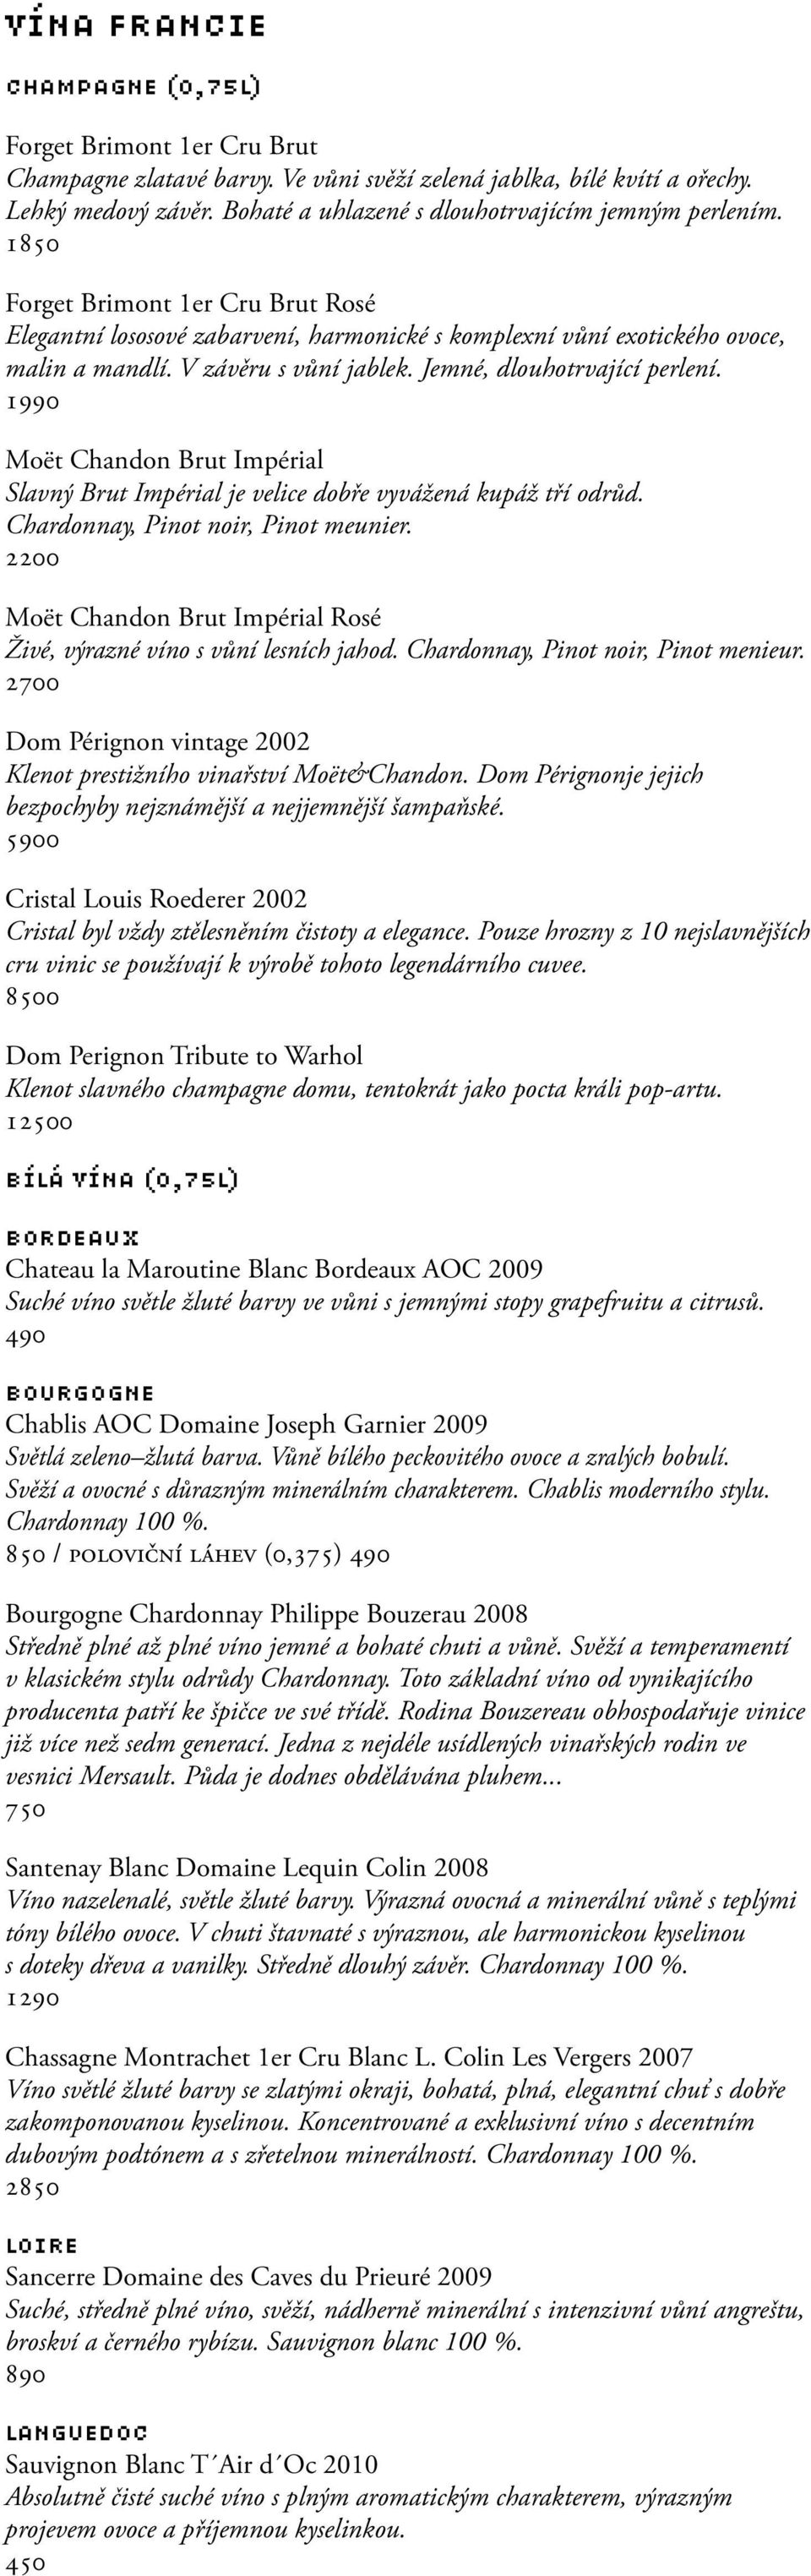 V závěru s vůní jablek. Jemné, dlouhotrvající perlení. 1990 Moët Chandon Brut Impérial Slavný Brut Impérial je velice dobře vyvážená kupáž tří odrůd. Chardonnay, Pinot noir, Pinot meunier.